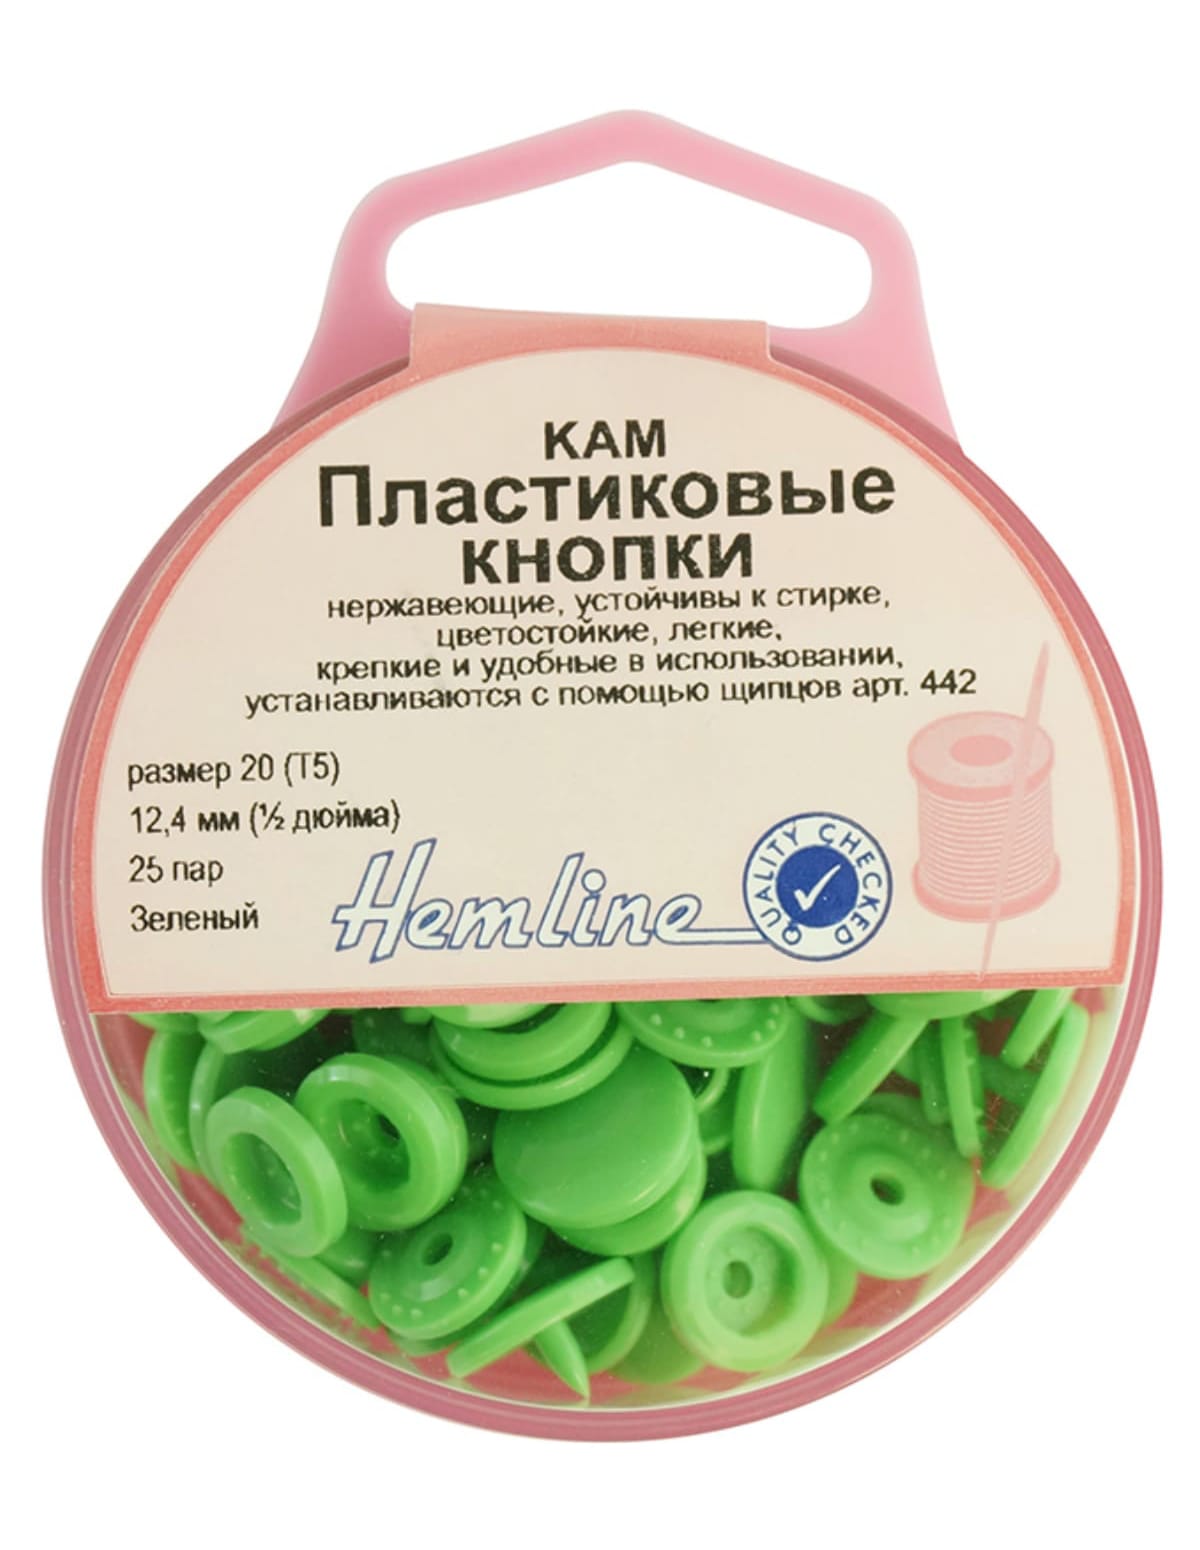 Кнопки пластиковые, 12,4 мм, цвет зеленый  20